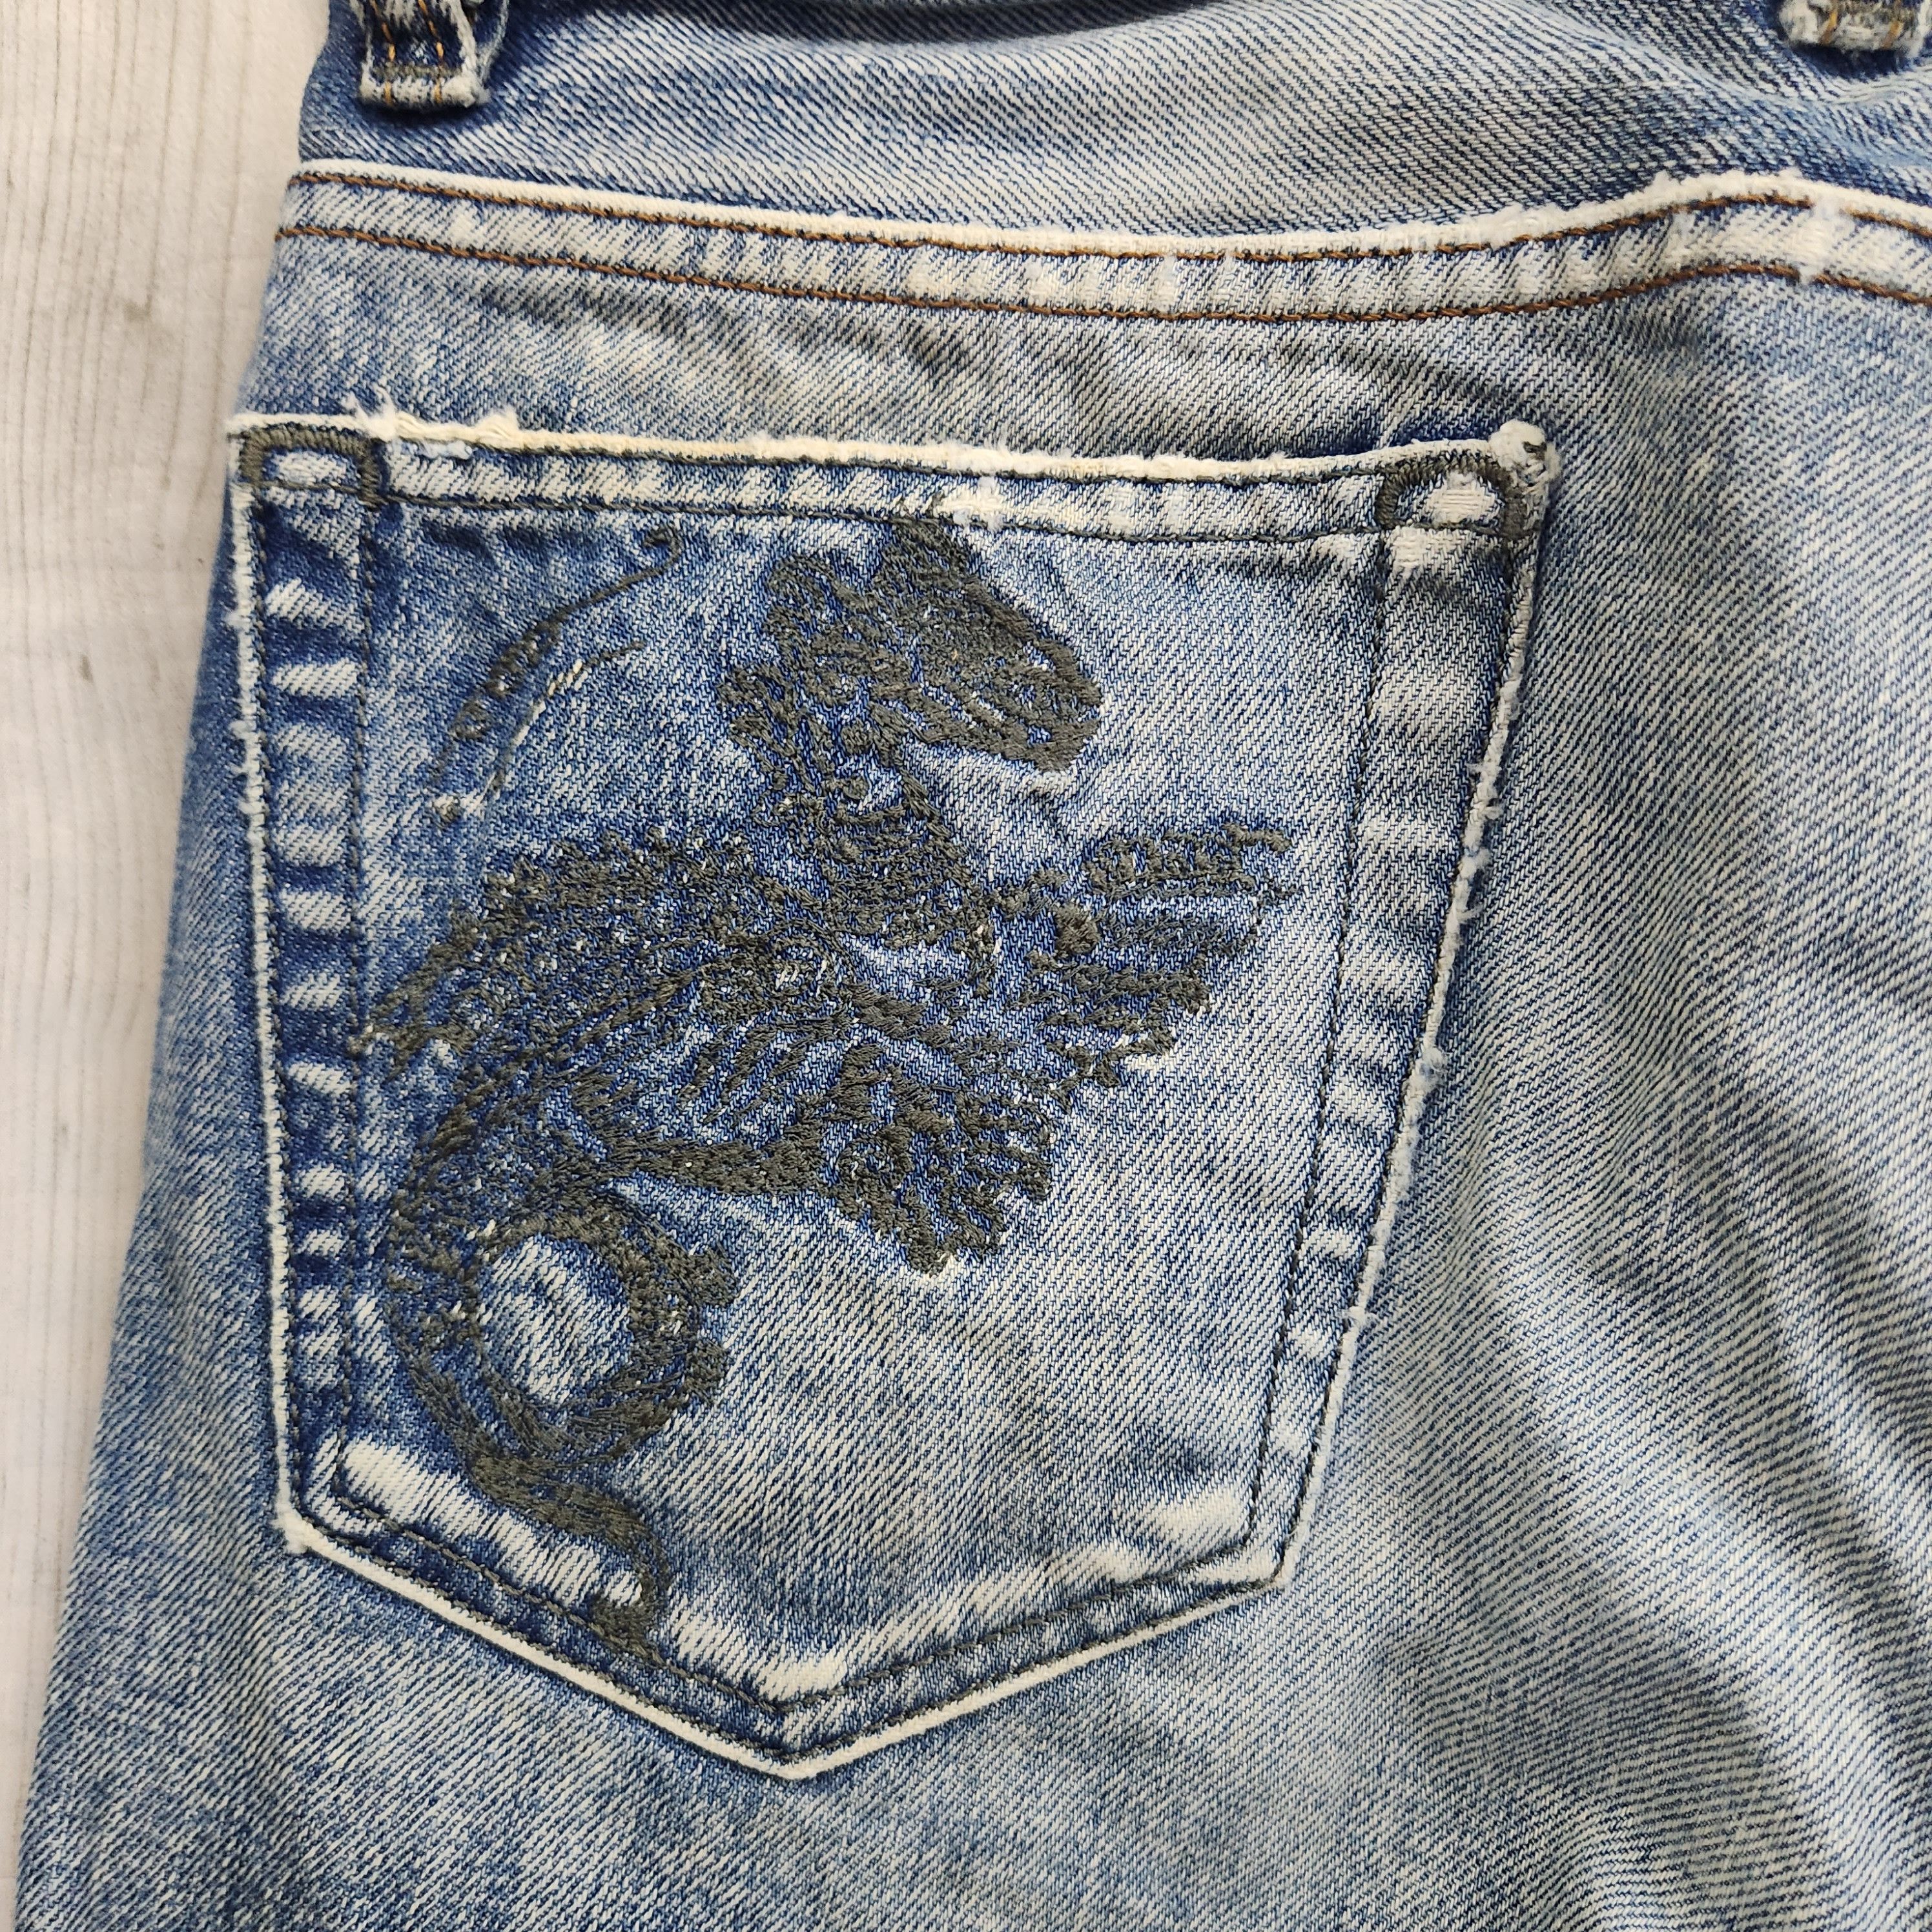 Distressed Denim Diesel Viker Jeans Made In Italy - 10